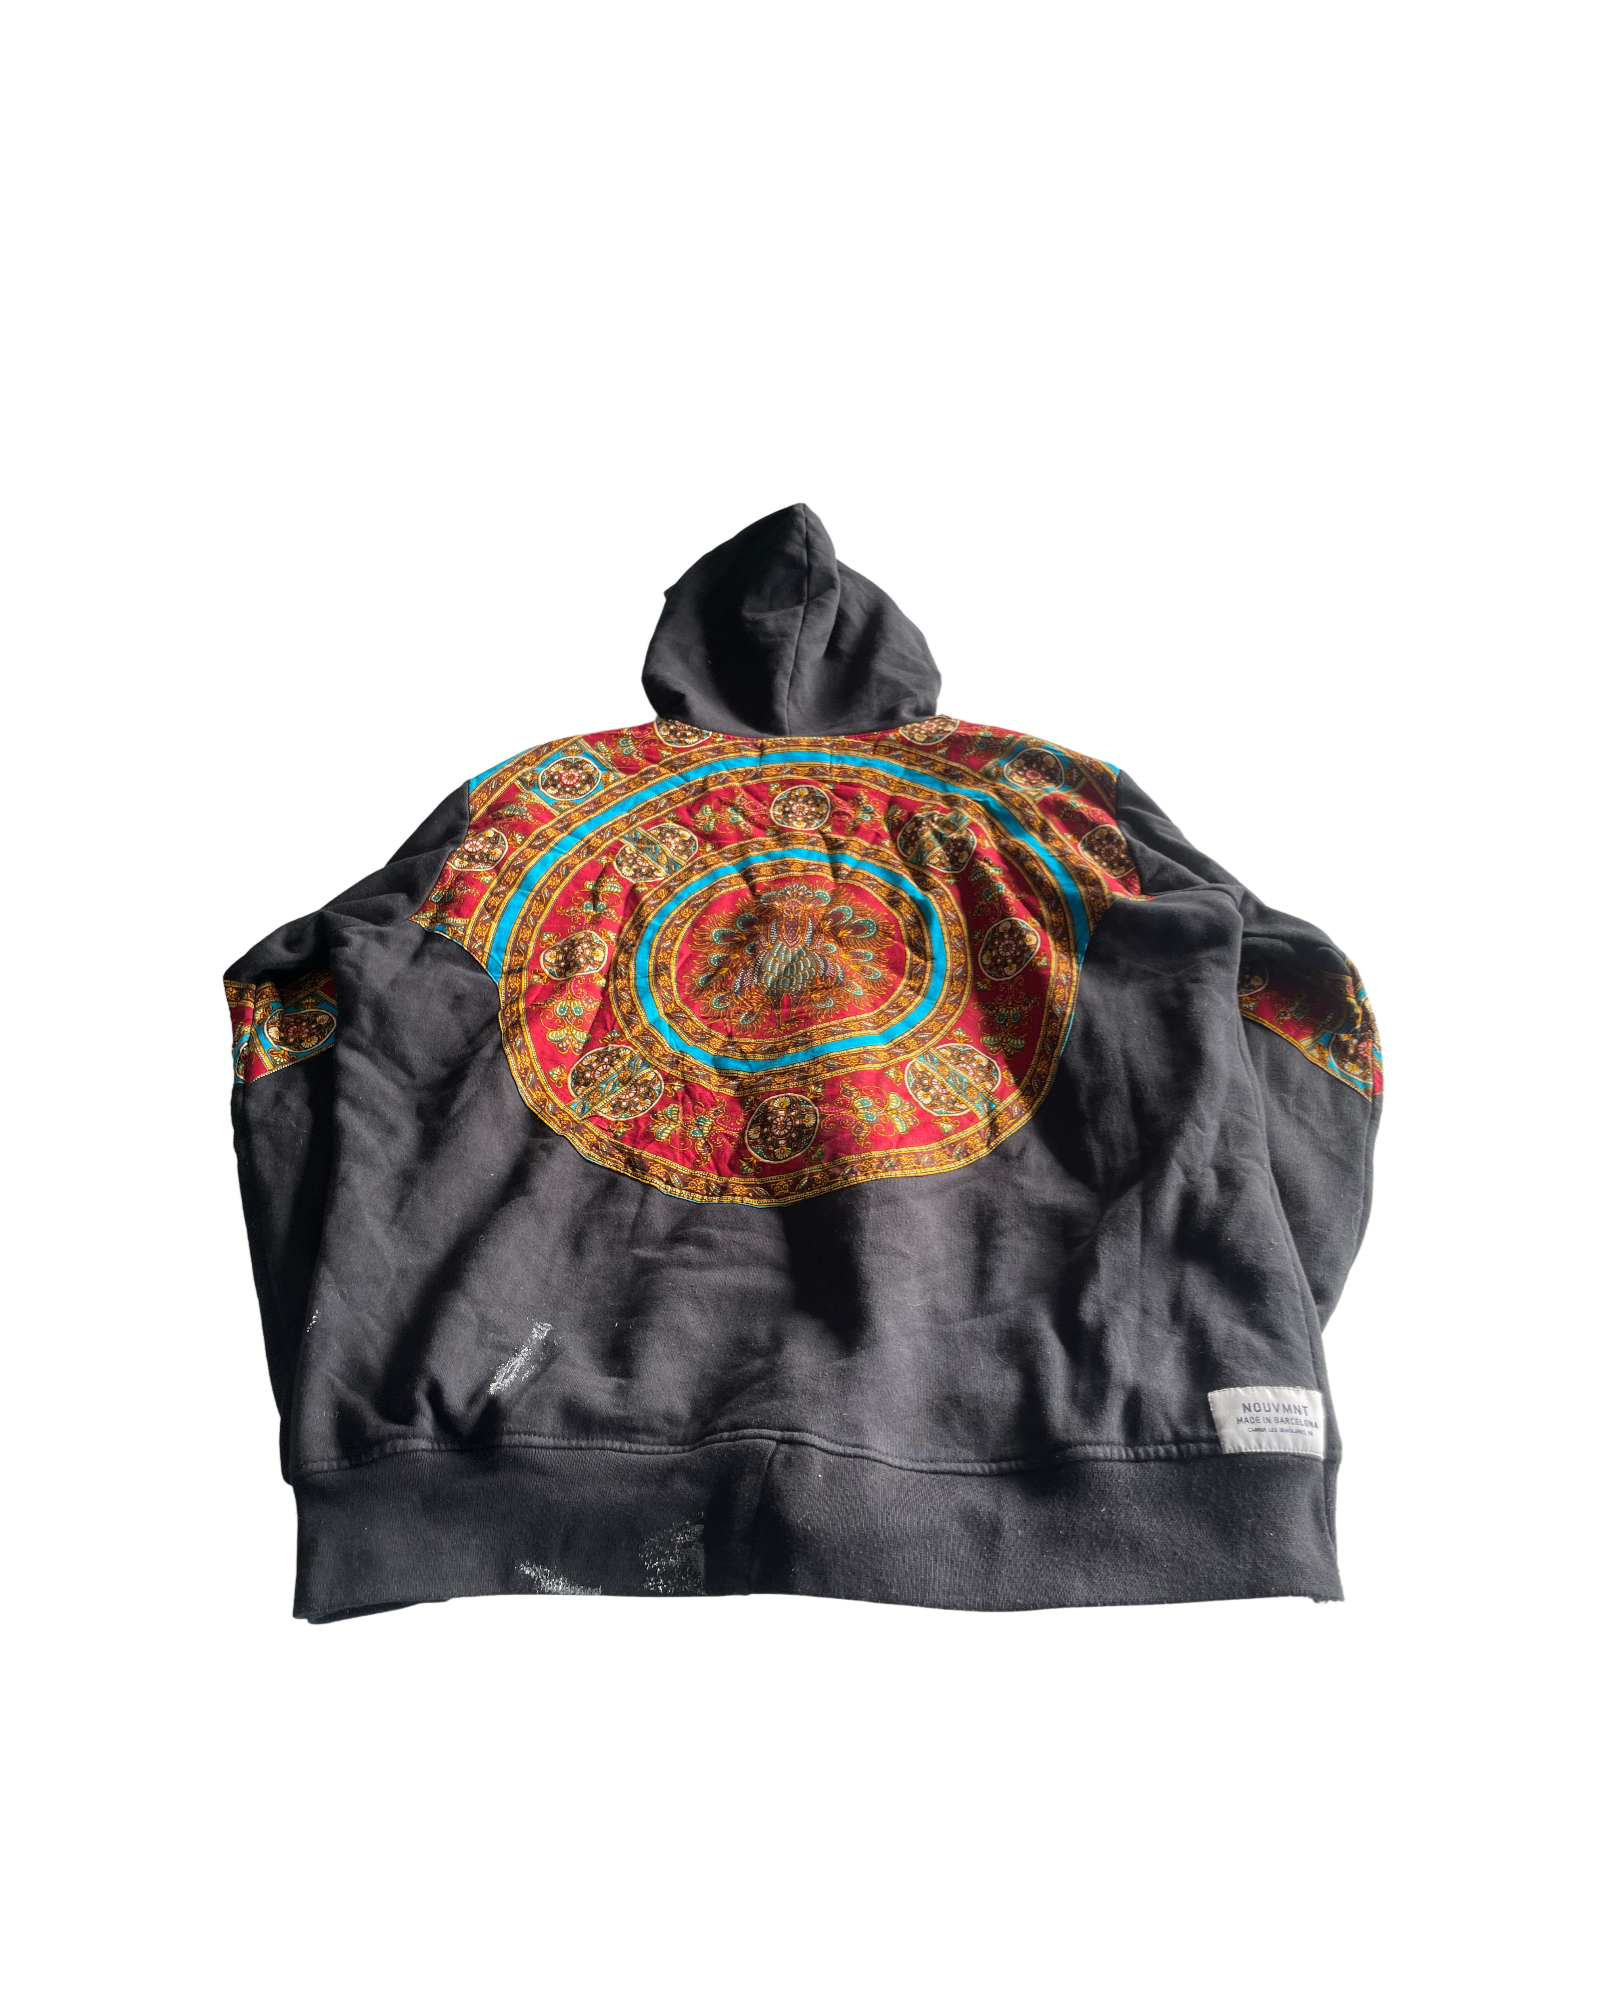 Vintage Zip Up Sweatshirt Hoodie - Men's Size S/M, Black and Multi-Color (SKU 4613)